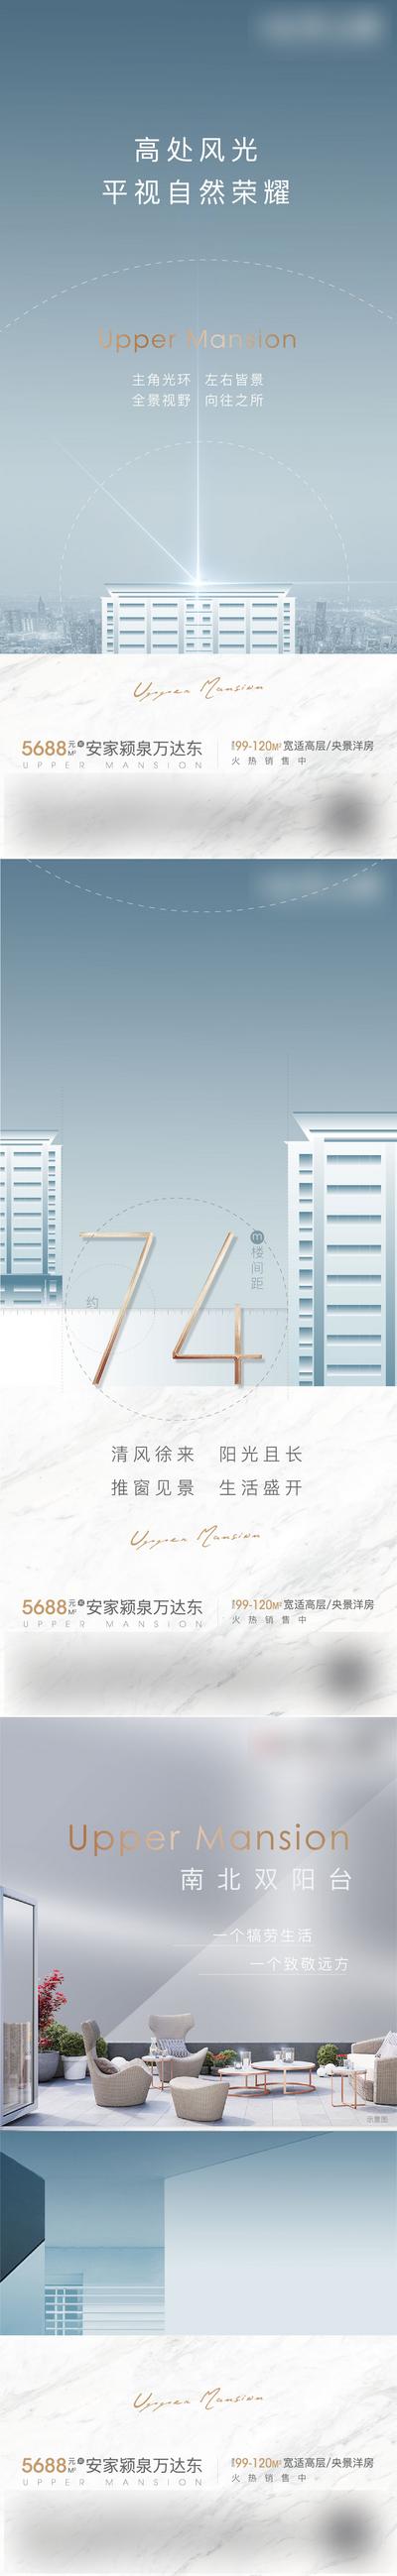 南门网 海报 房地产 高层 洋房 楼间距 阳台 数字 价值点 高端 调性 融创蓝